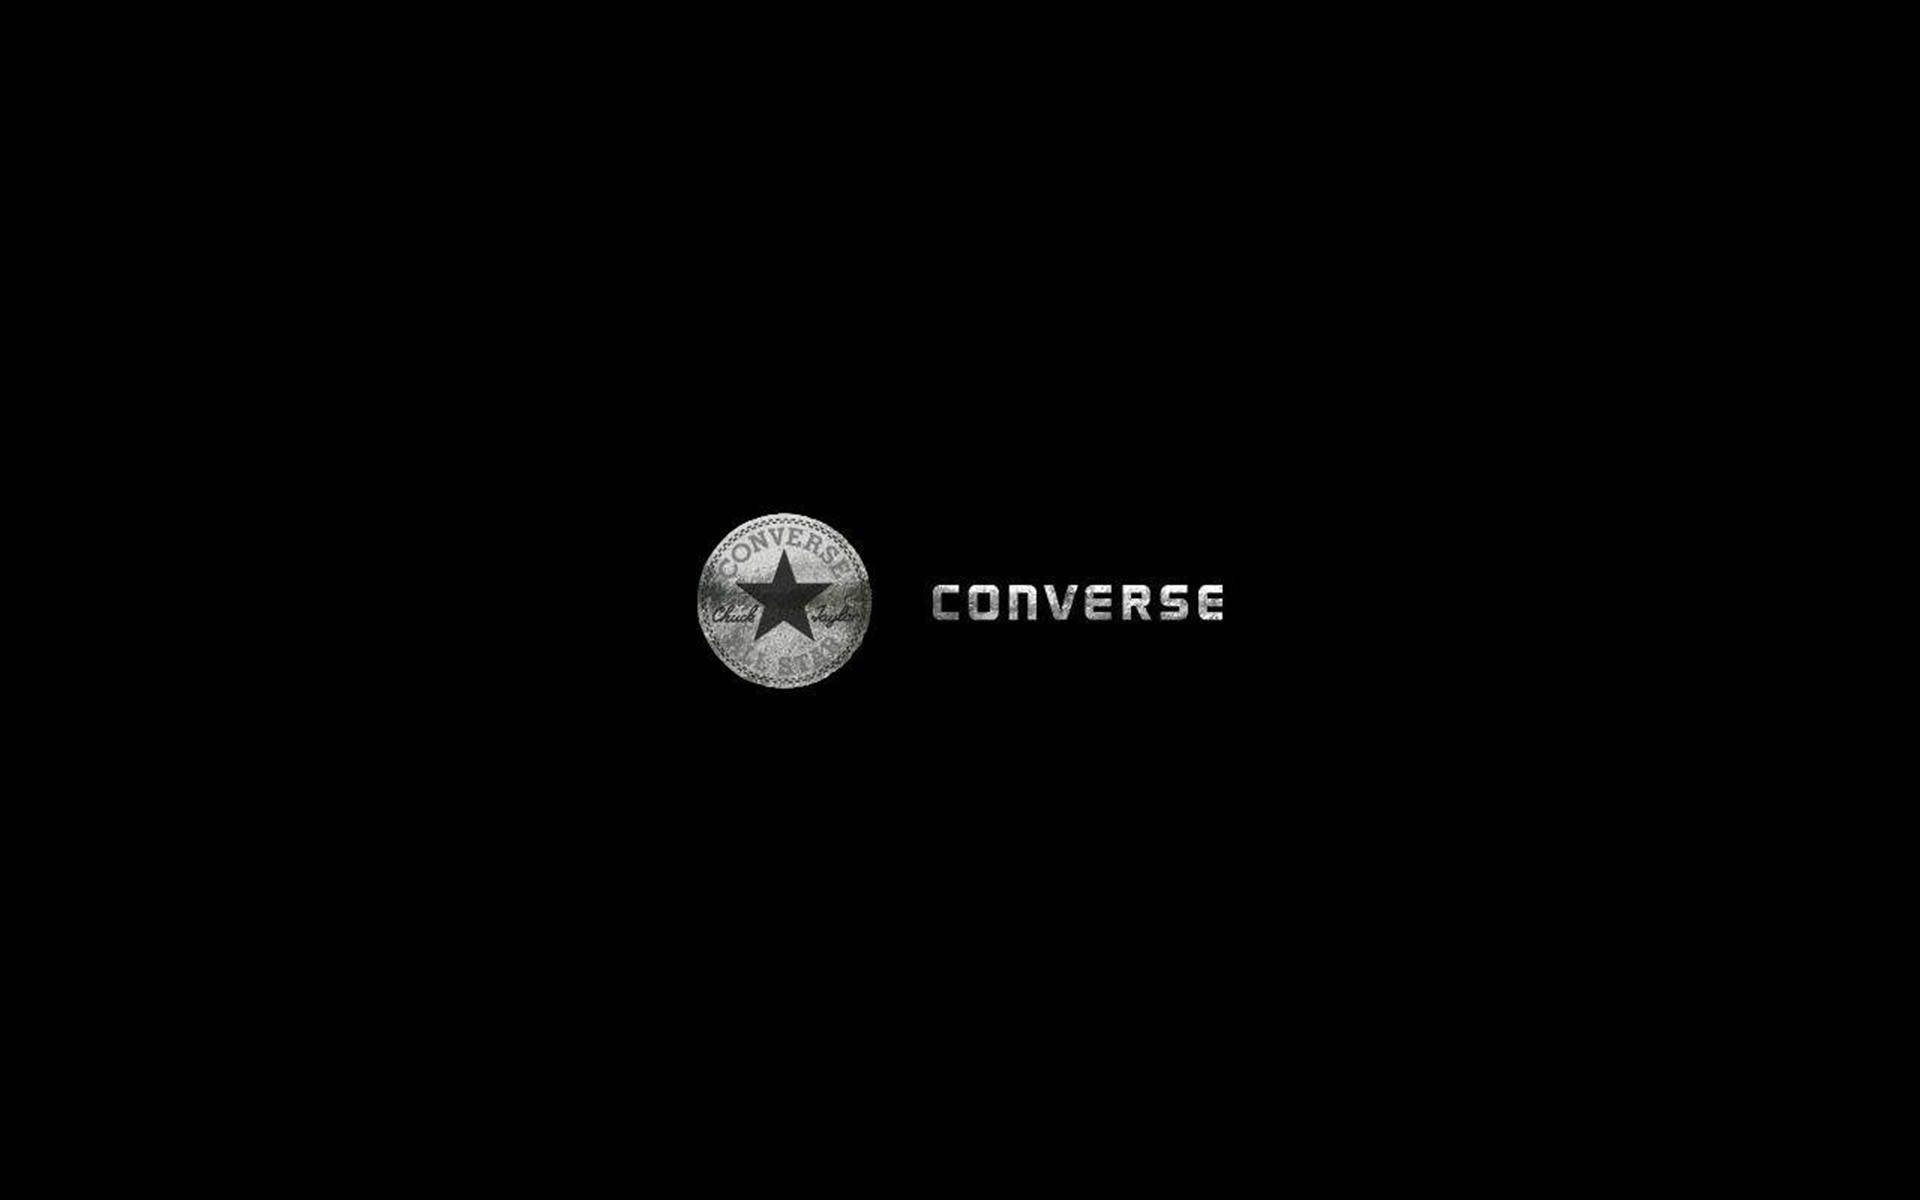 Silbernesconverse-logo Wallpaper